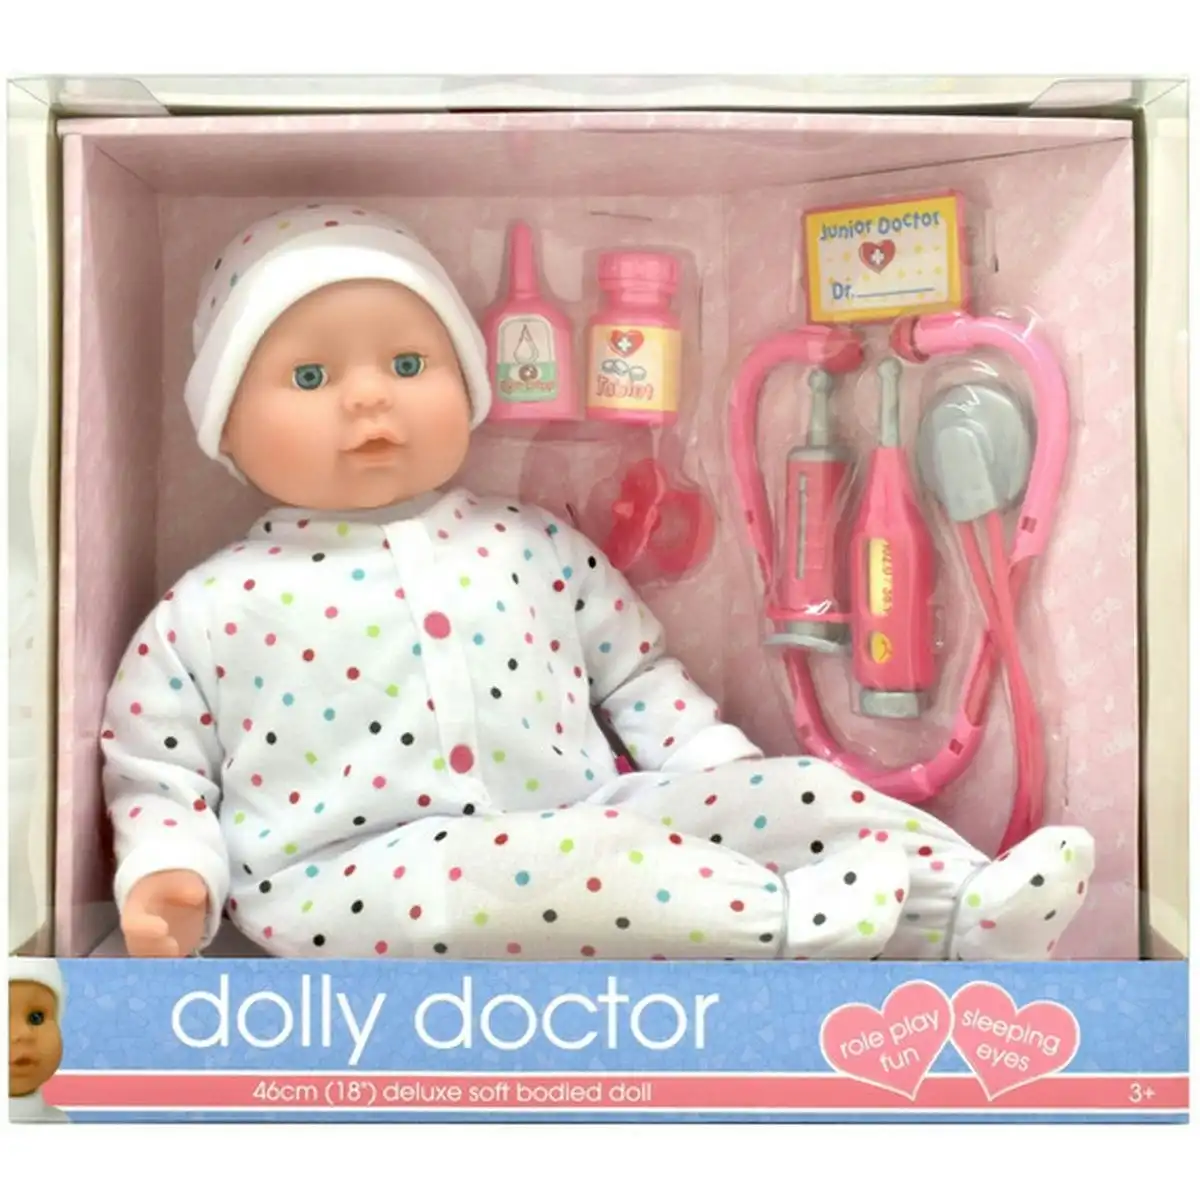 DollsWorld - Dolly Doctor Polka Dot 46cm